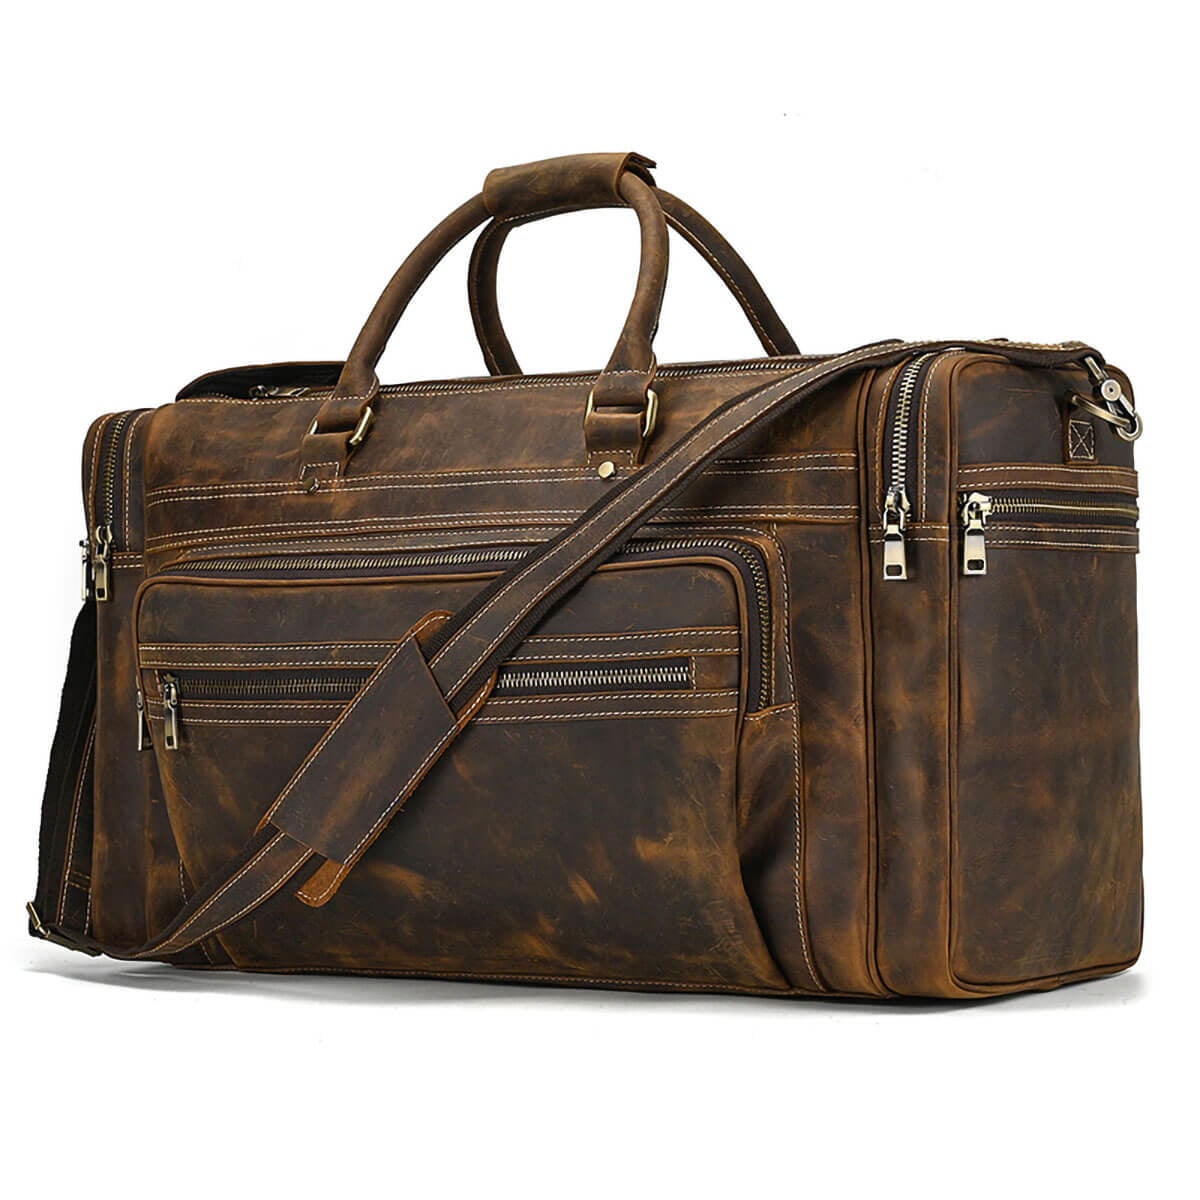 Genuine Leather Big Travel Luggage Duffel Bag